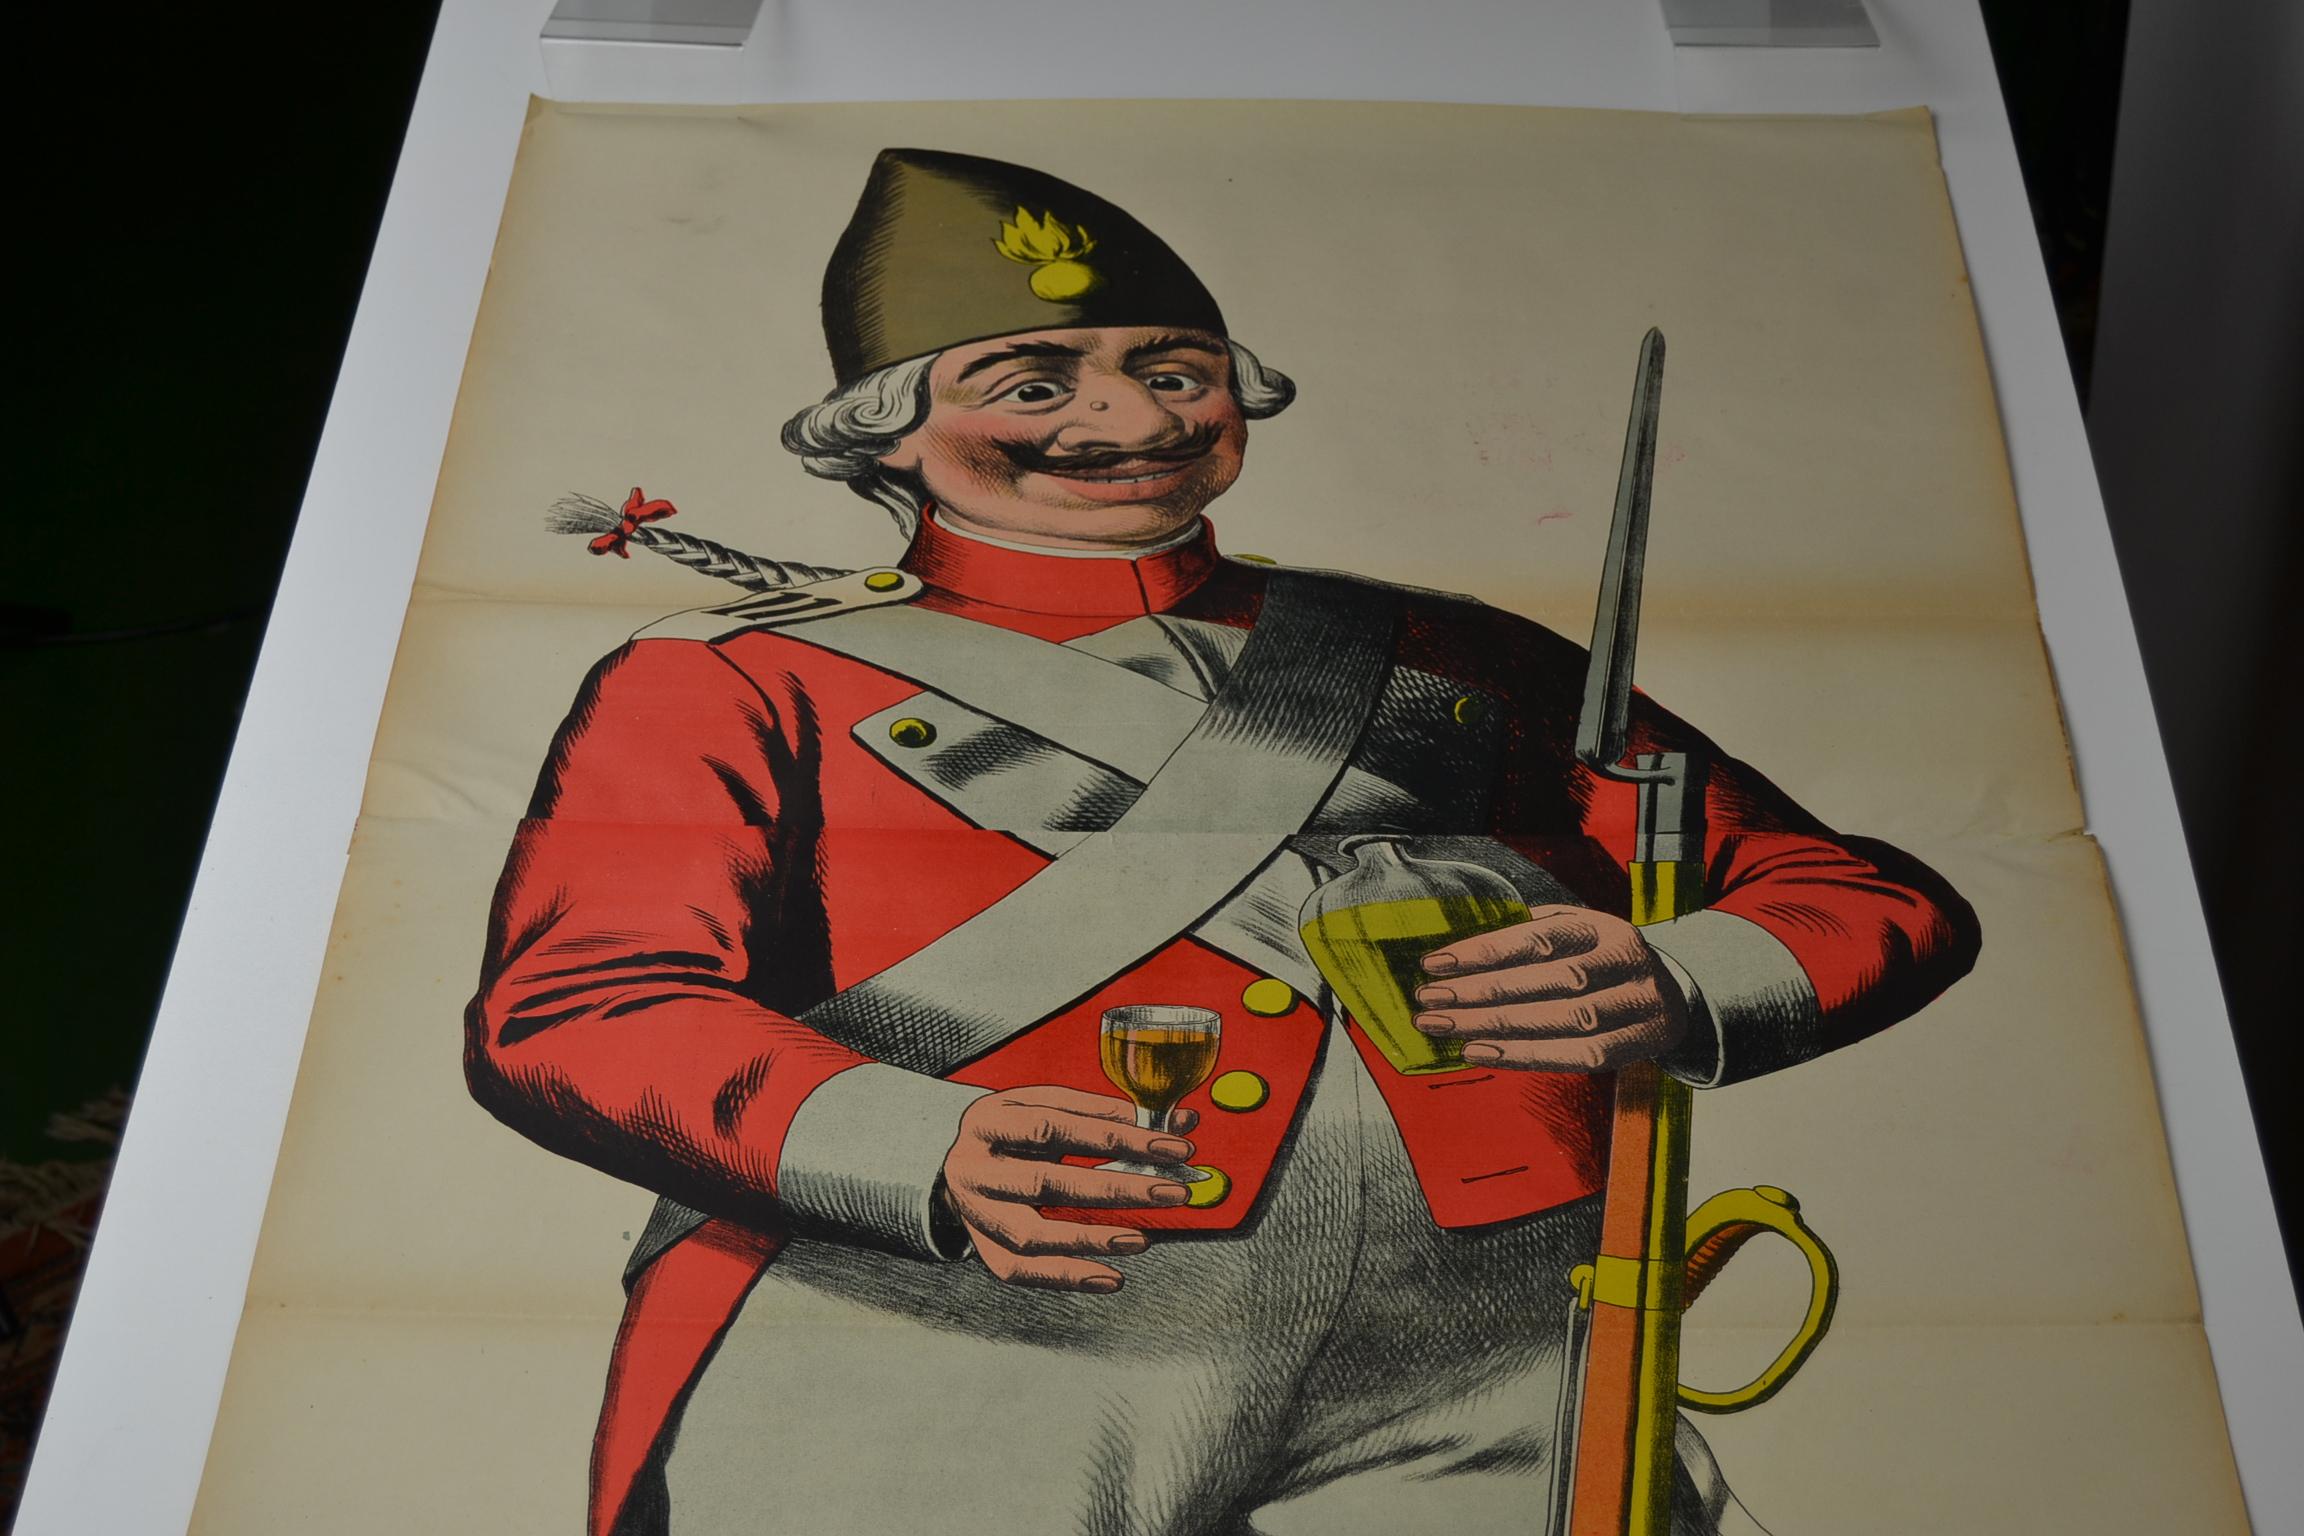 Wunderschönes Steinlithografie-Poster mit einem Offizier, der einen Schnaps trinkt.
Dieses Poster in Lebensgröße ist ein echter Hingucker!
Es hat spektakuläre Farben und Größe. +/- 64,56 Zoll Höhe, +/- 164 cm Höhe!
Sie stammt aus den 1880er